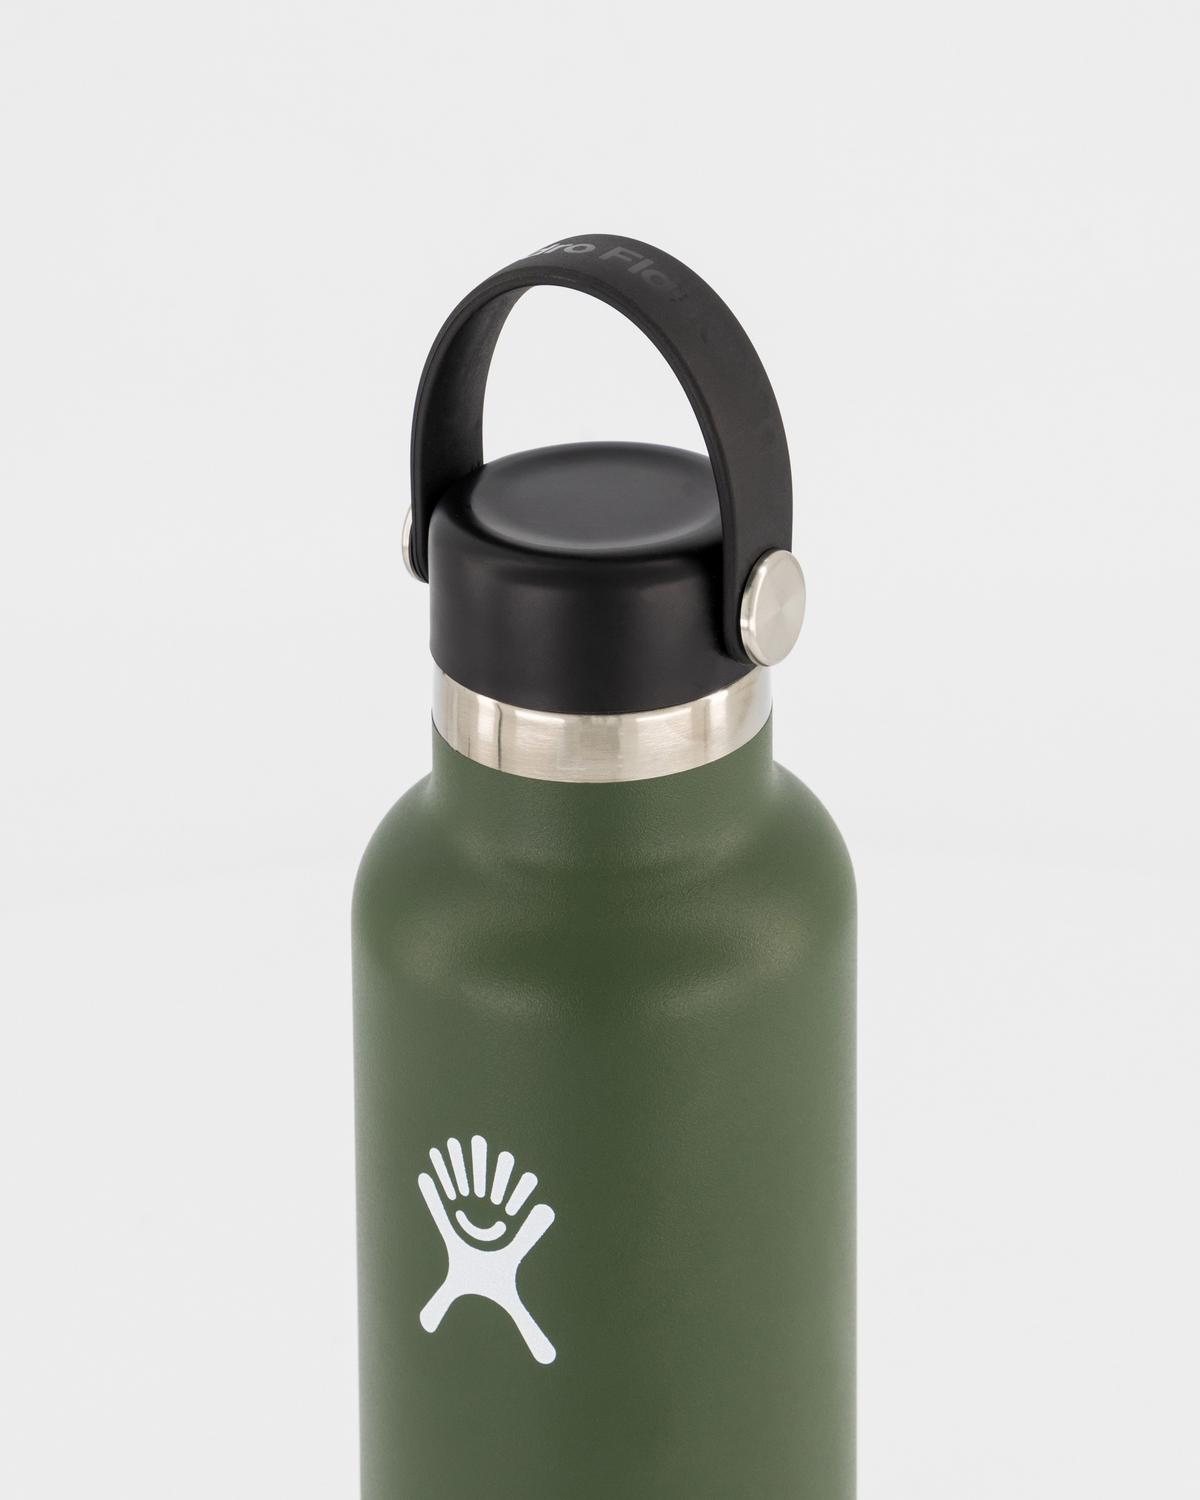 Hydro Flask 532ml Standard Mouth Bottle -  Green